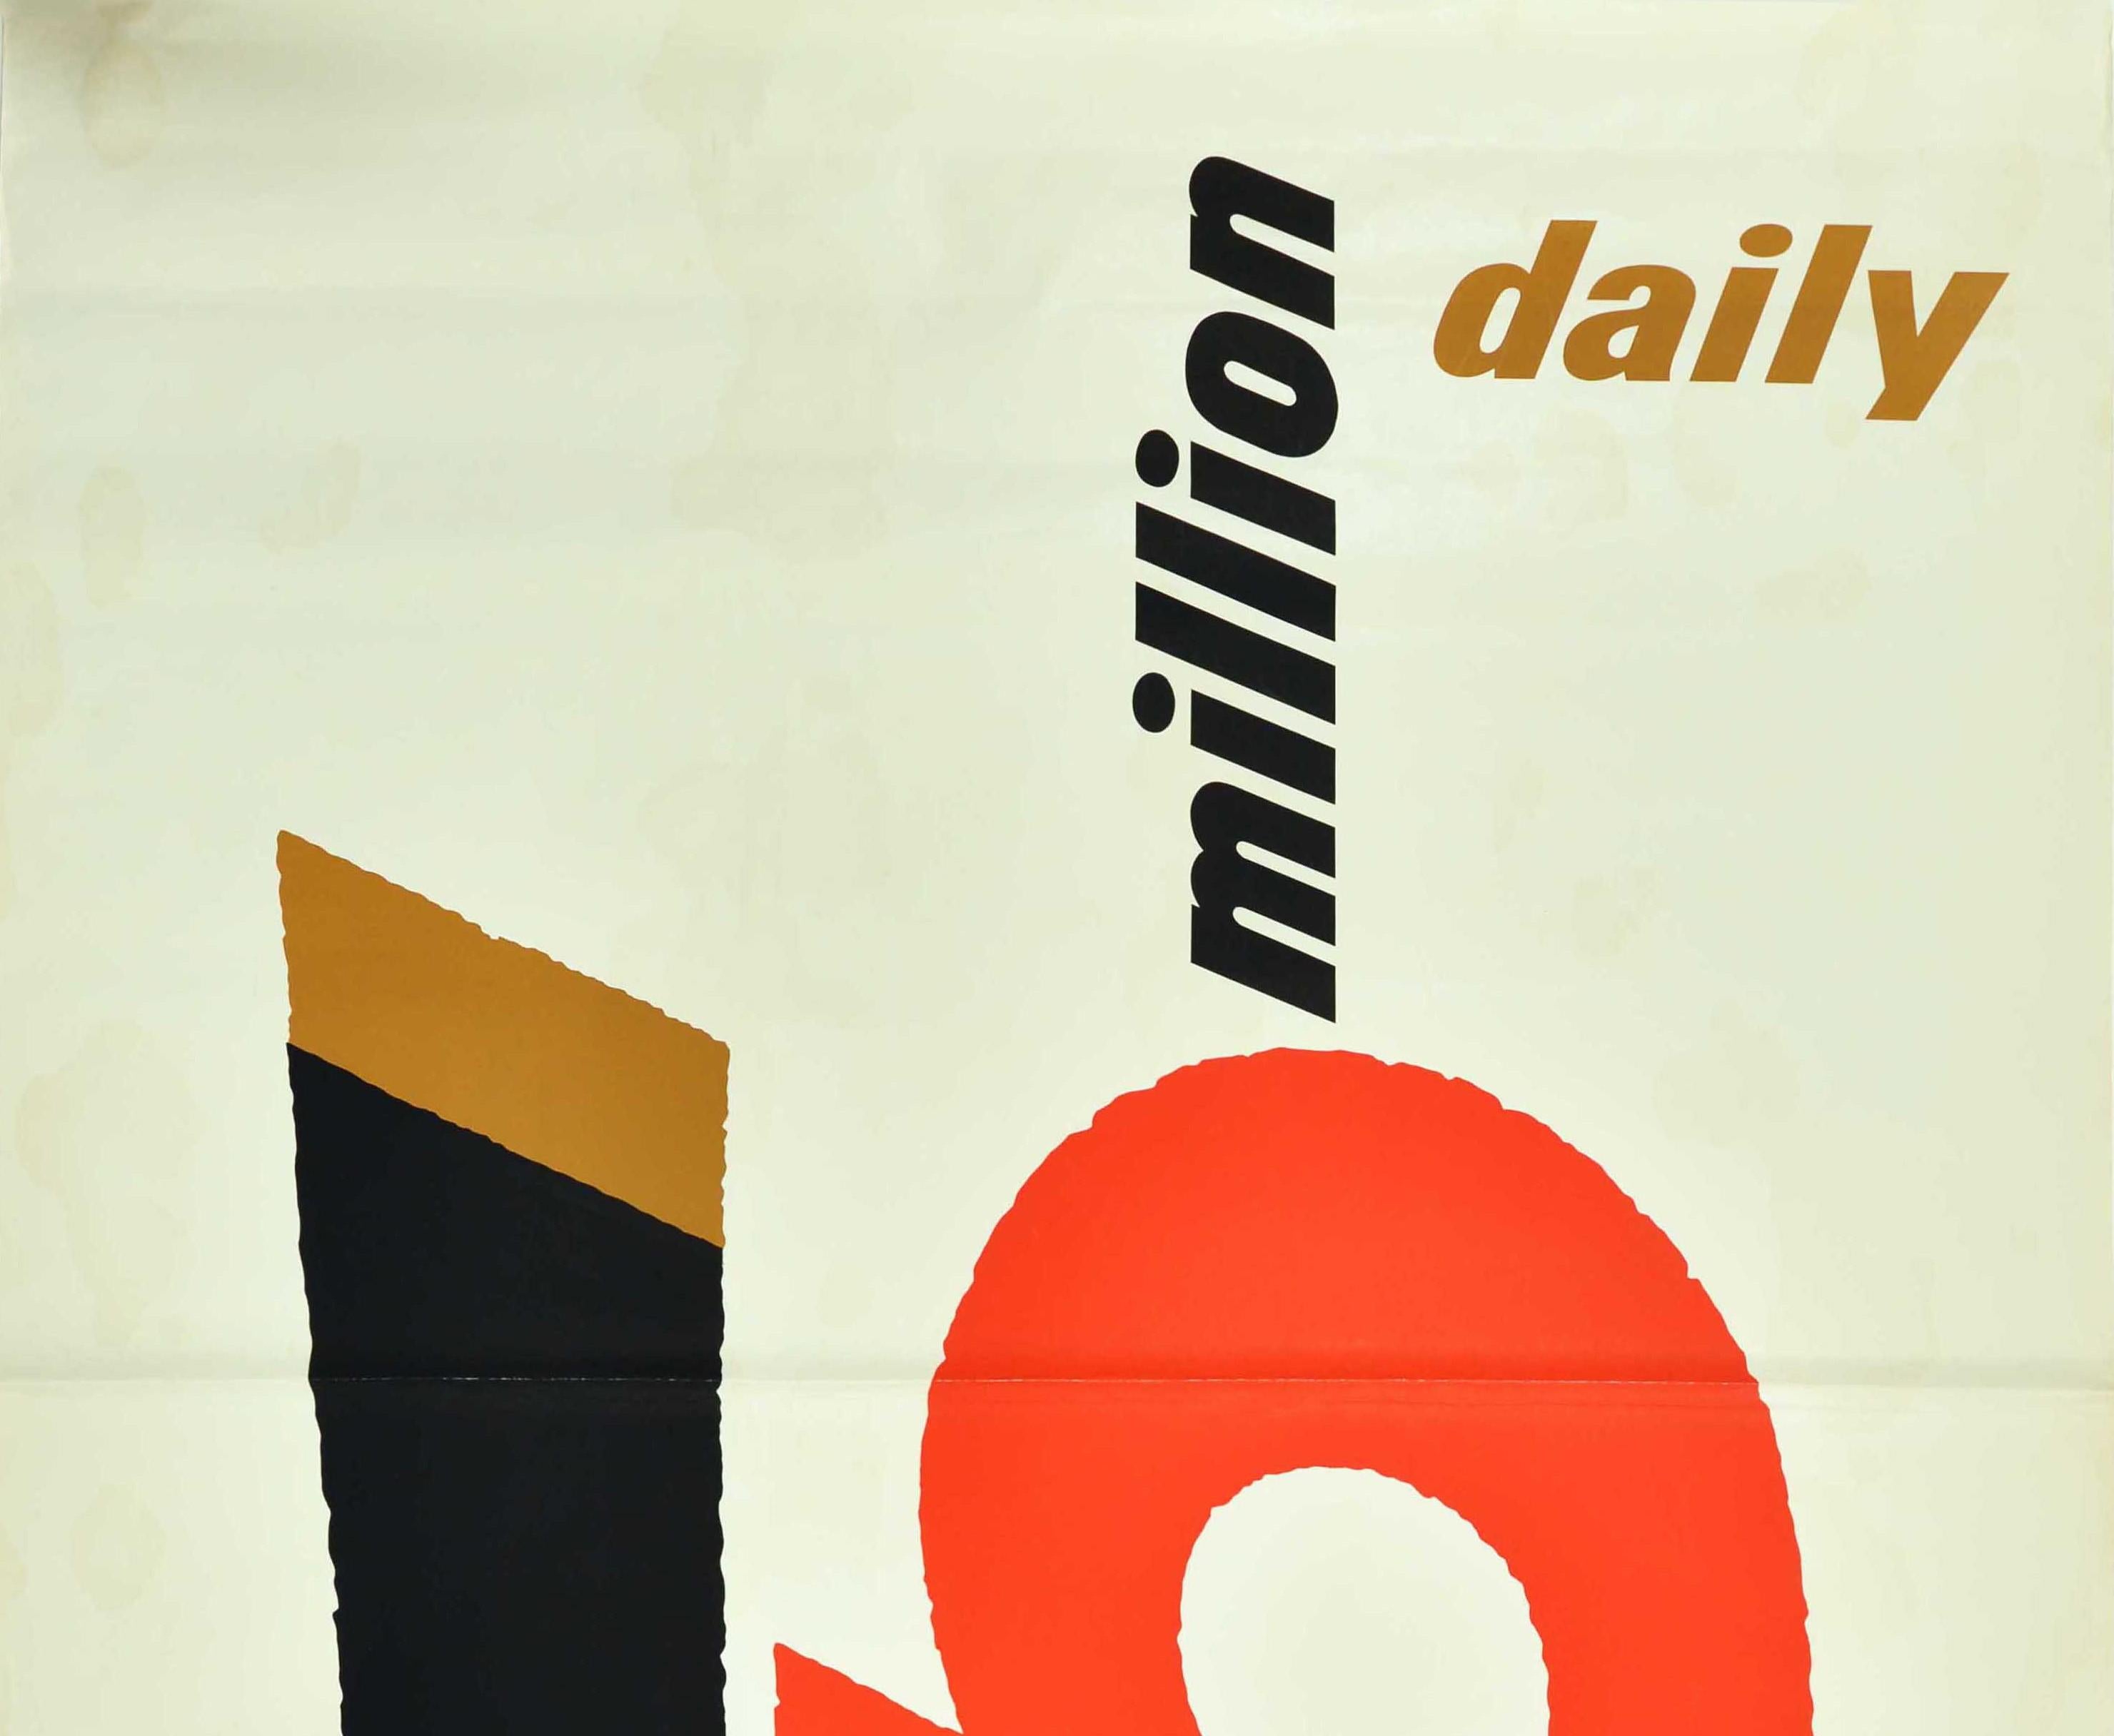 Großes Original-Werbeplakat für Guinness von dem bedeutenden britischen Grafikdesigner Abram Games (Abraham Gamse; 1914-1996). Großartiges typografisches Design mit dem Text Guinness 5 Million Daily mit der fettgedruckten 5 und dem stilisierten G in